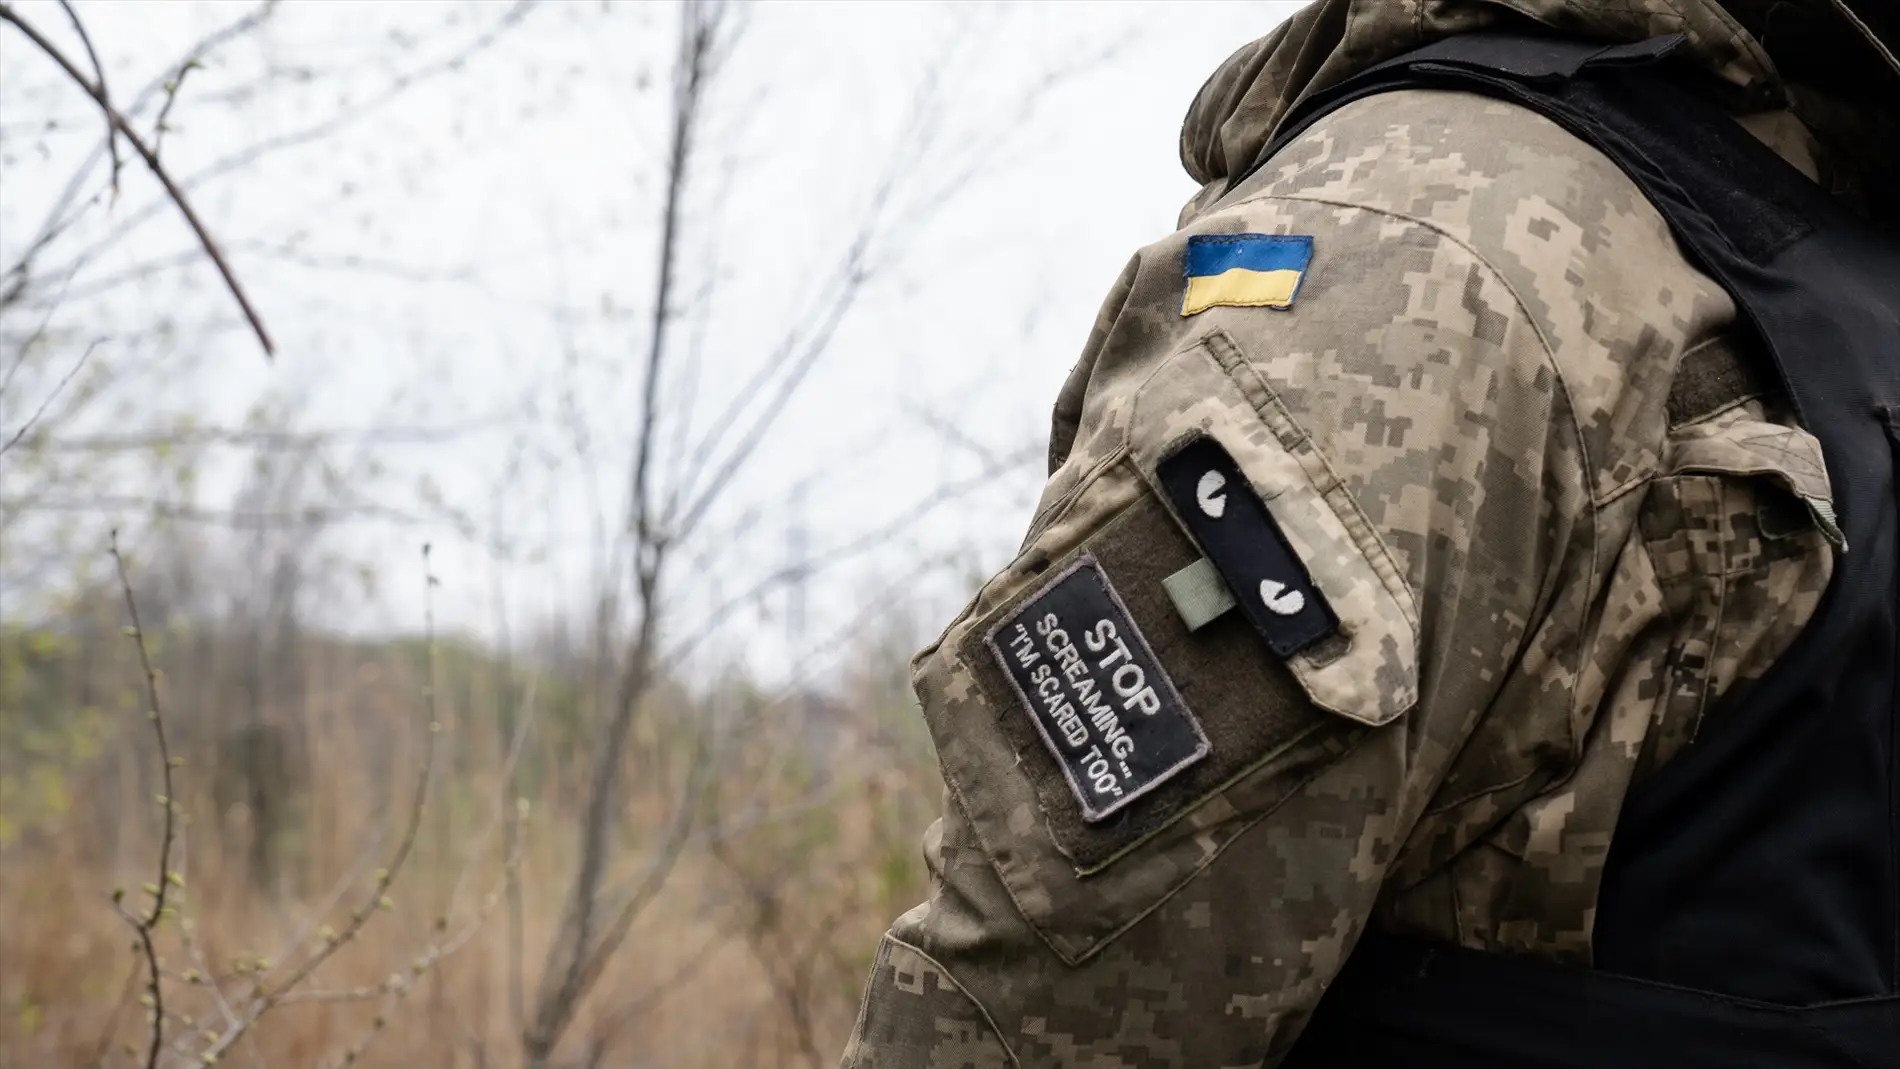 Exteriores confirma que hay un soldado español "desaparecido" en Ucrania desde noviembre